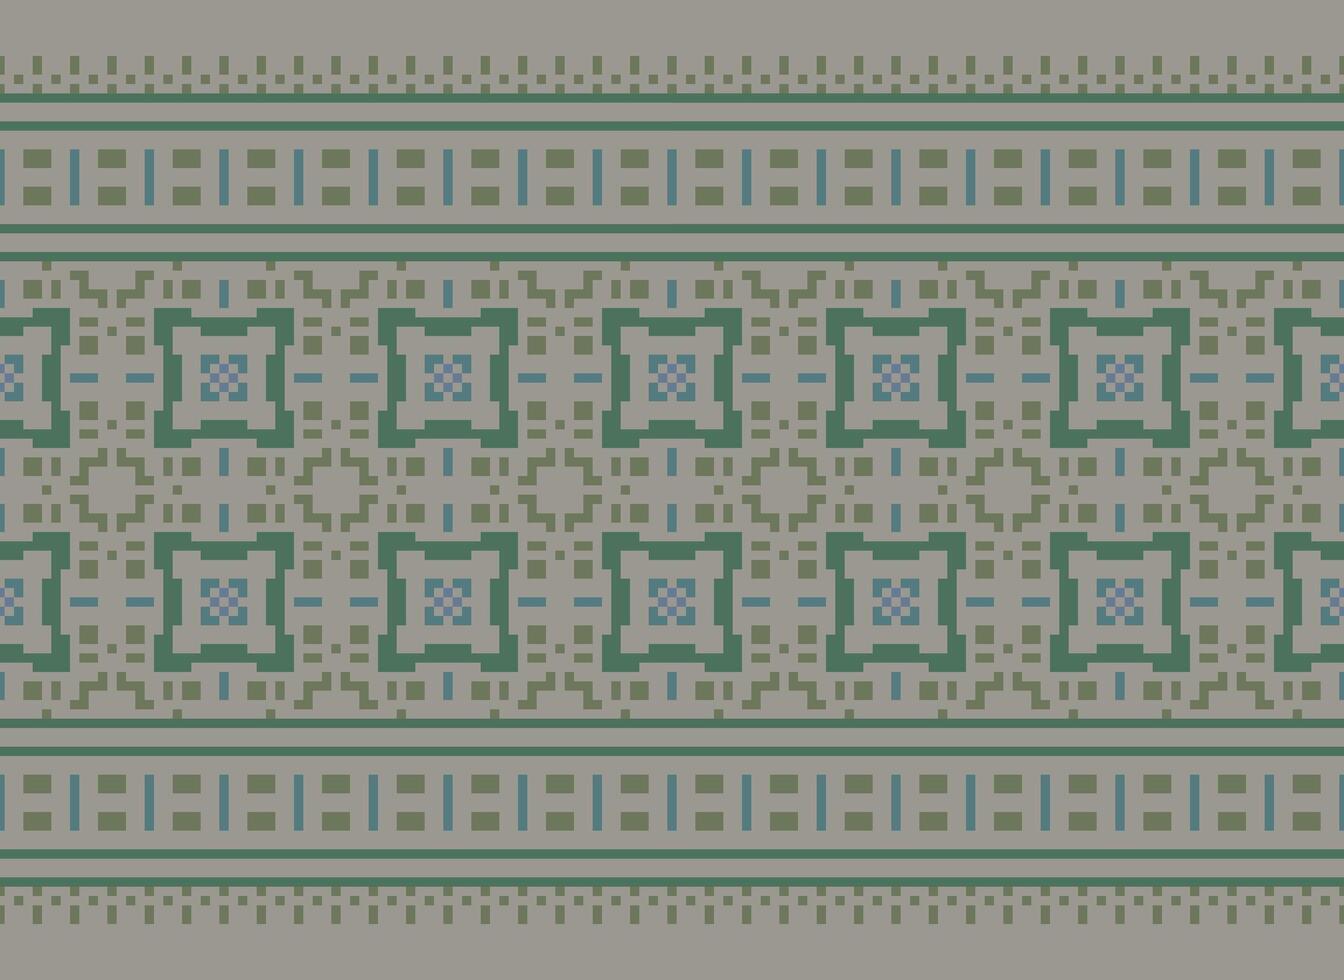 pixel traditioneel etnisch patroon paisley bloem ikat achtergrond abstract aztec Afrikaanse Indonesisch Indisch naadloos patroon voor kleding stof afdrukken kleding jurk tapijt gordijnen en sarong vector